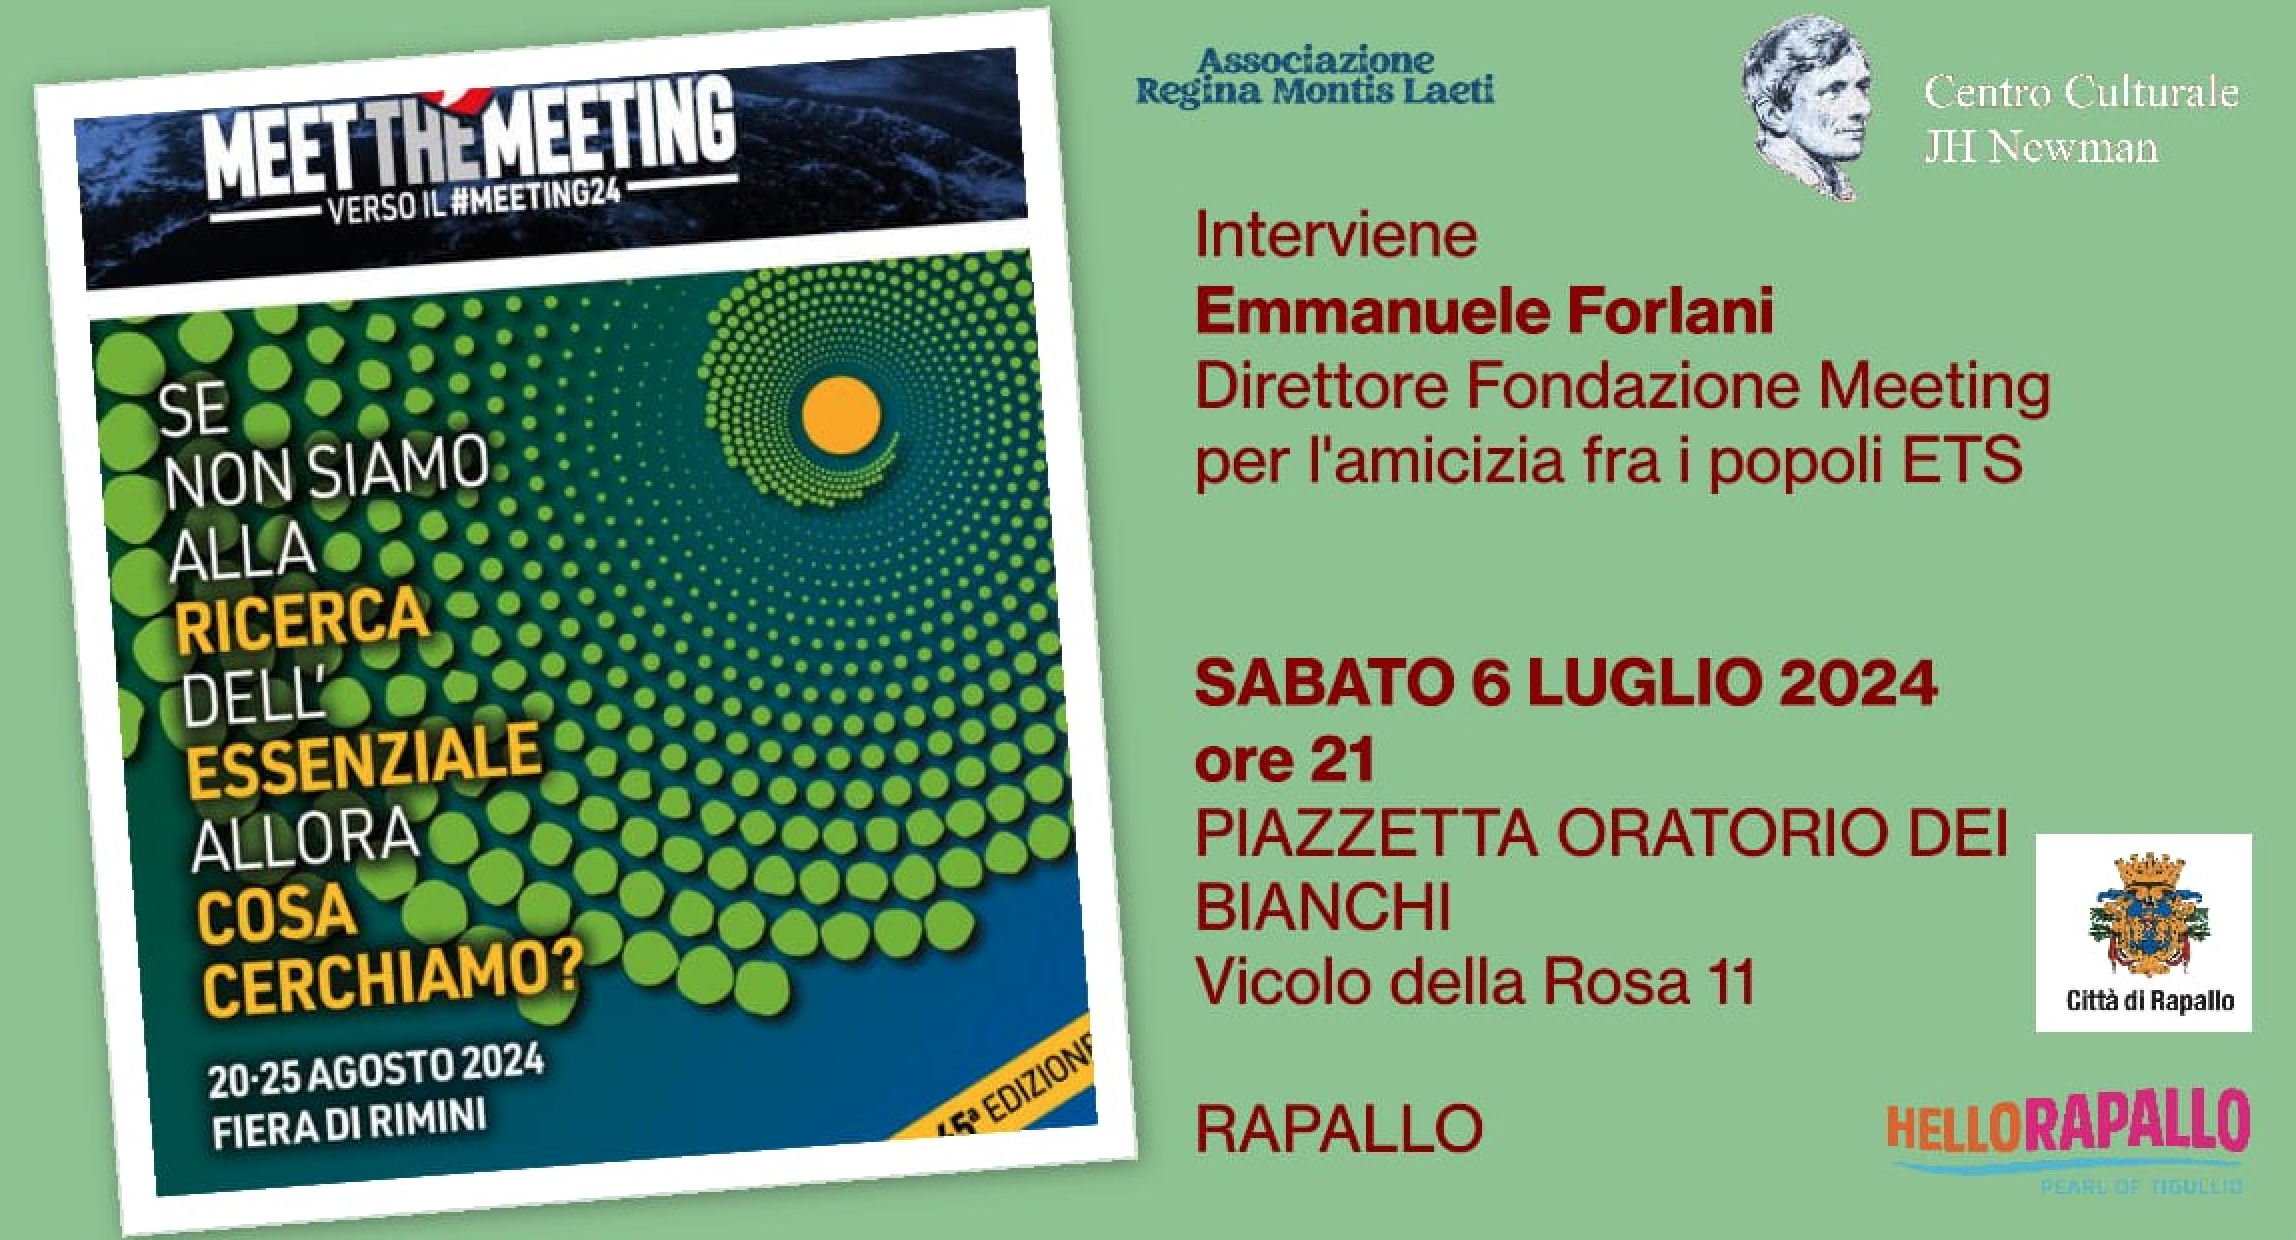 Featured image for “Rapallo: Meet the Meeting 2024. Se non siamo alla ricerca dell’essenziale..”